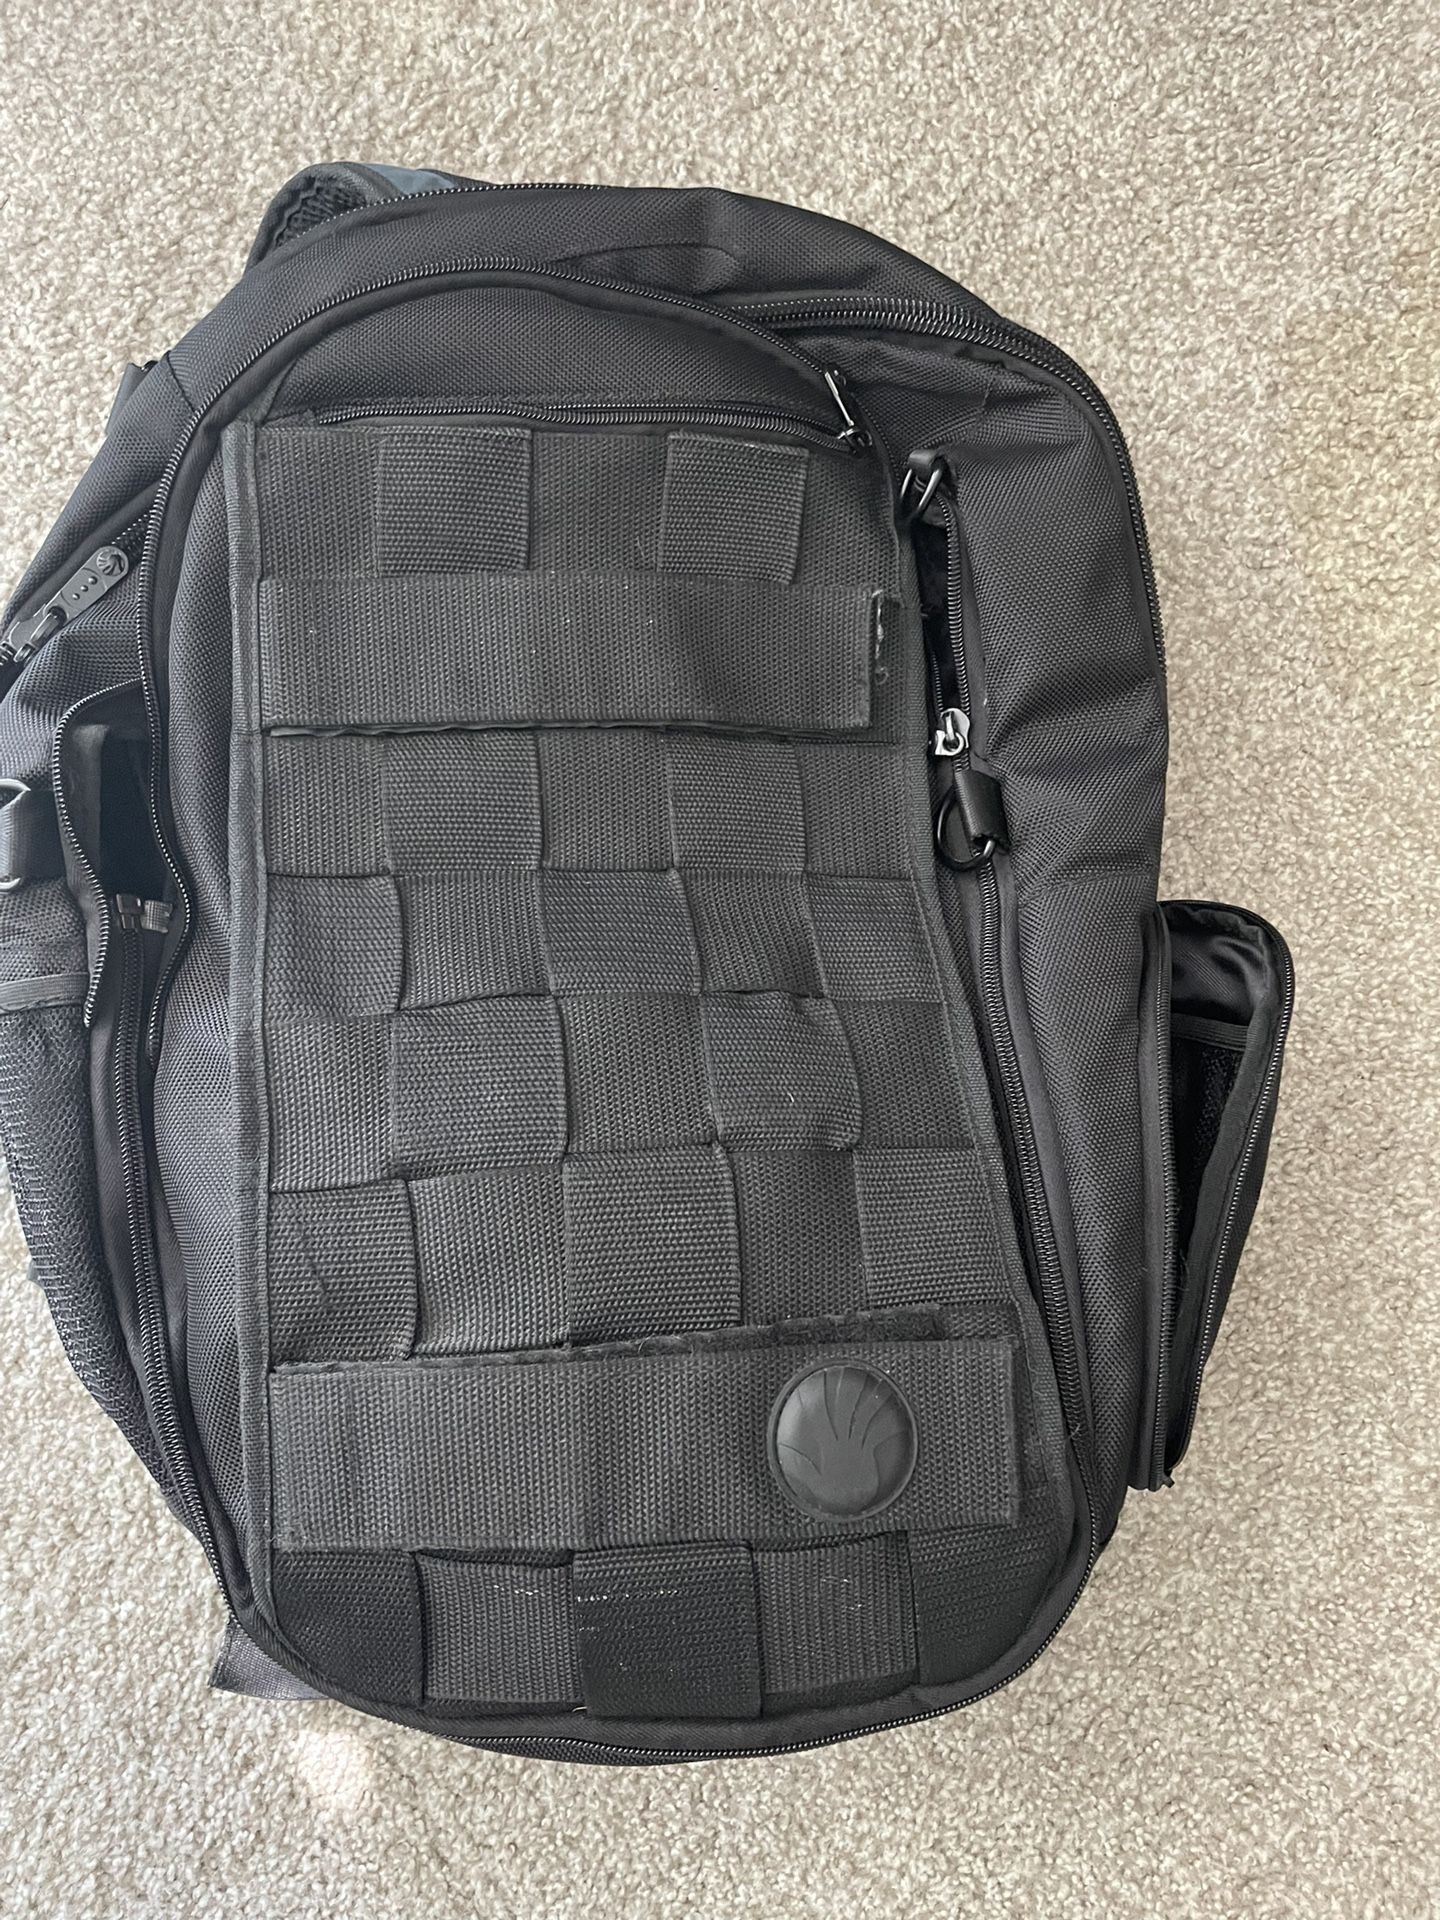 SLAPPA MASK KOA  (17 inch)Travel Backpack,